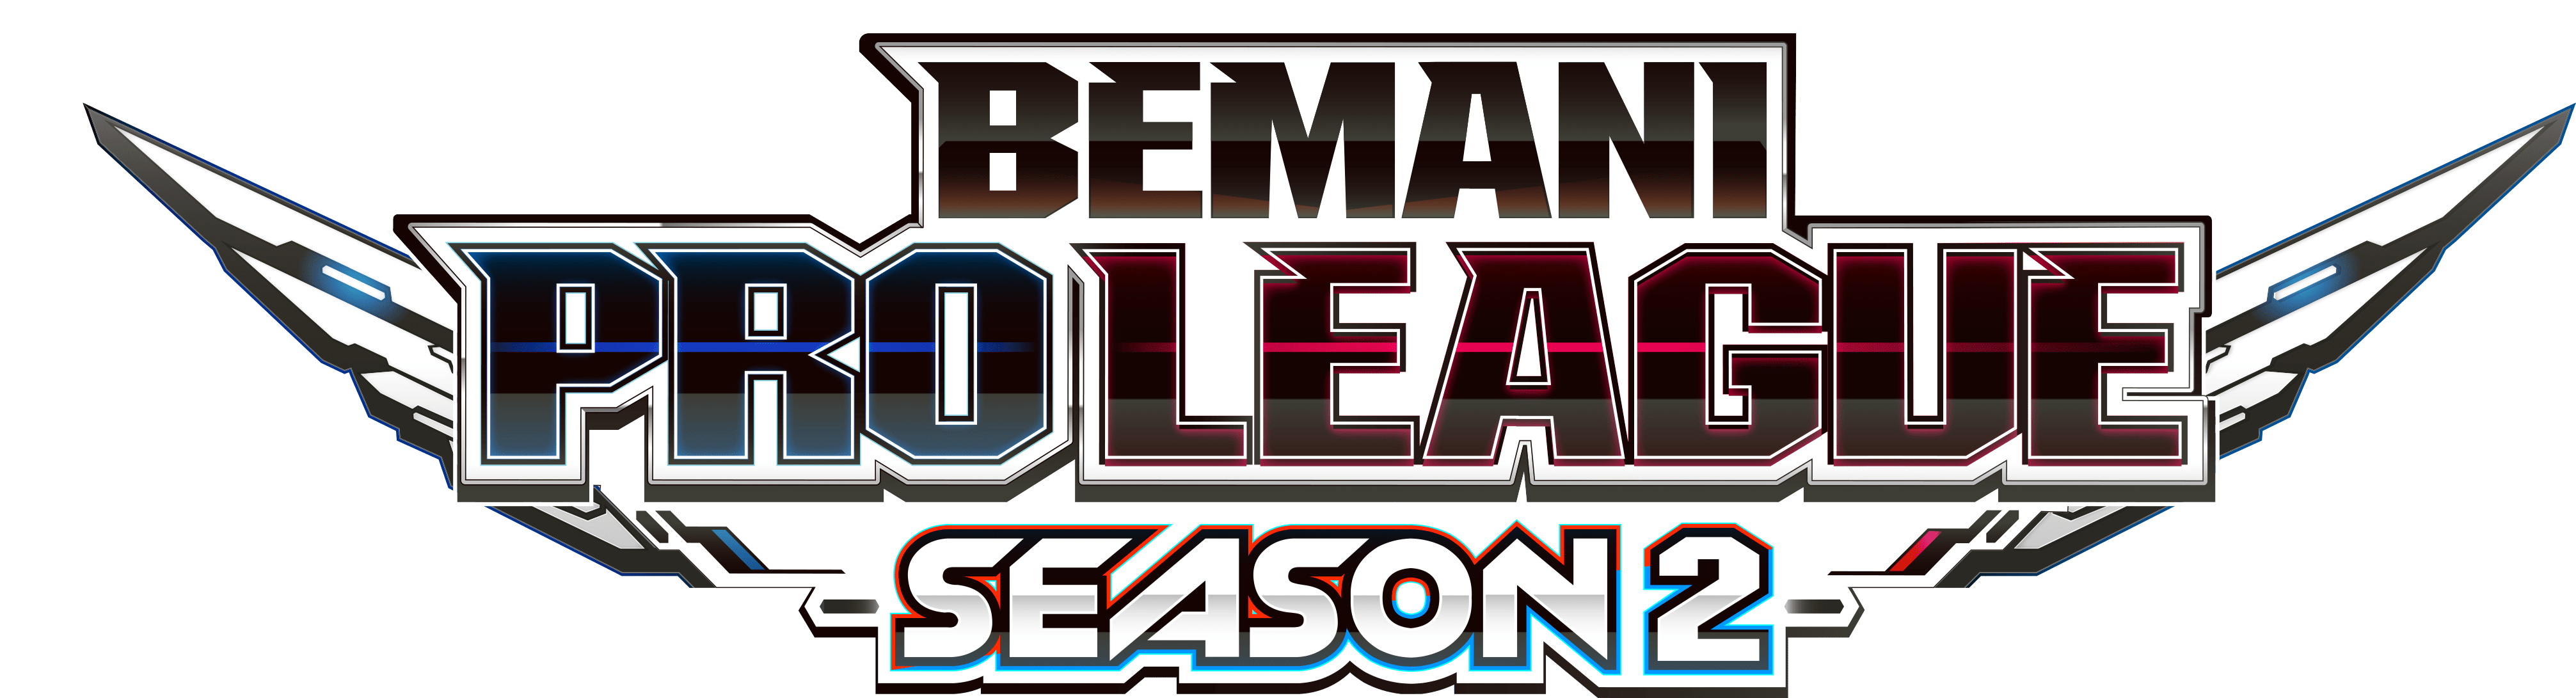 【大会情報】BEMANI PRO LEAGUE SEASON2 レギュラーステージ 第19、20試合【2022年8月31日】